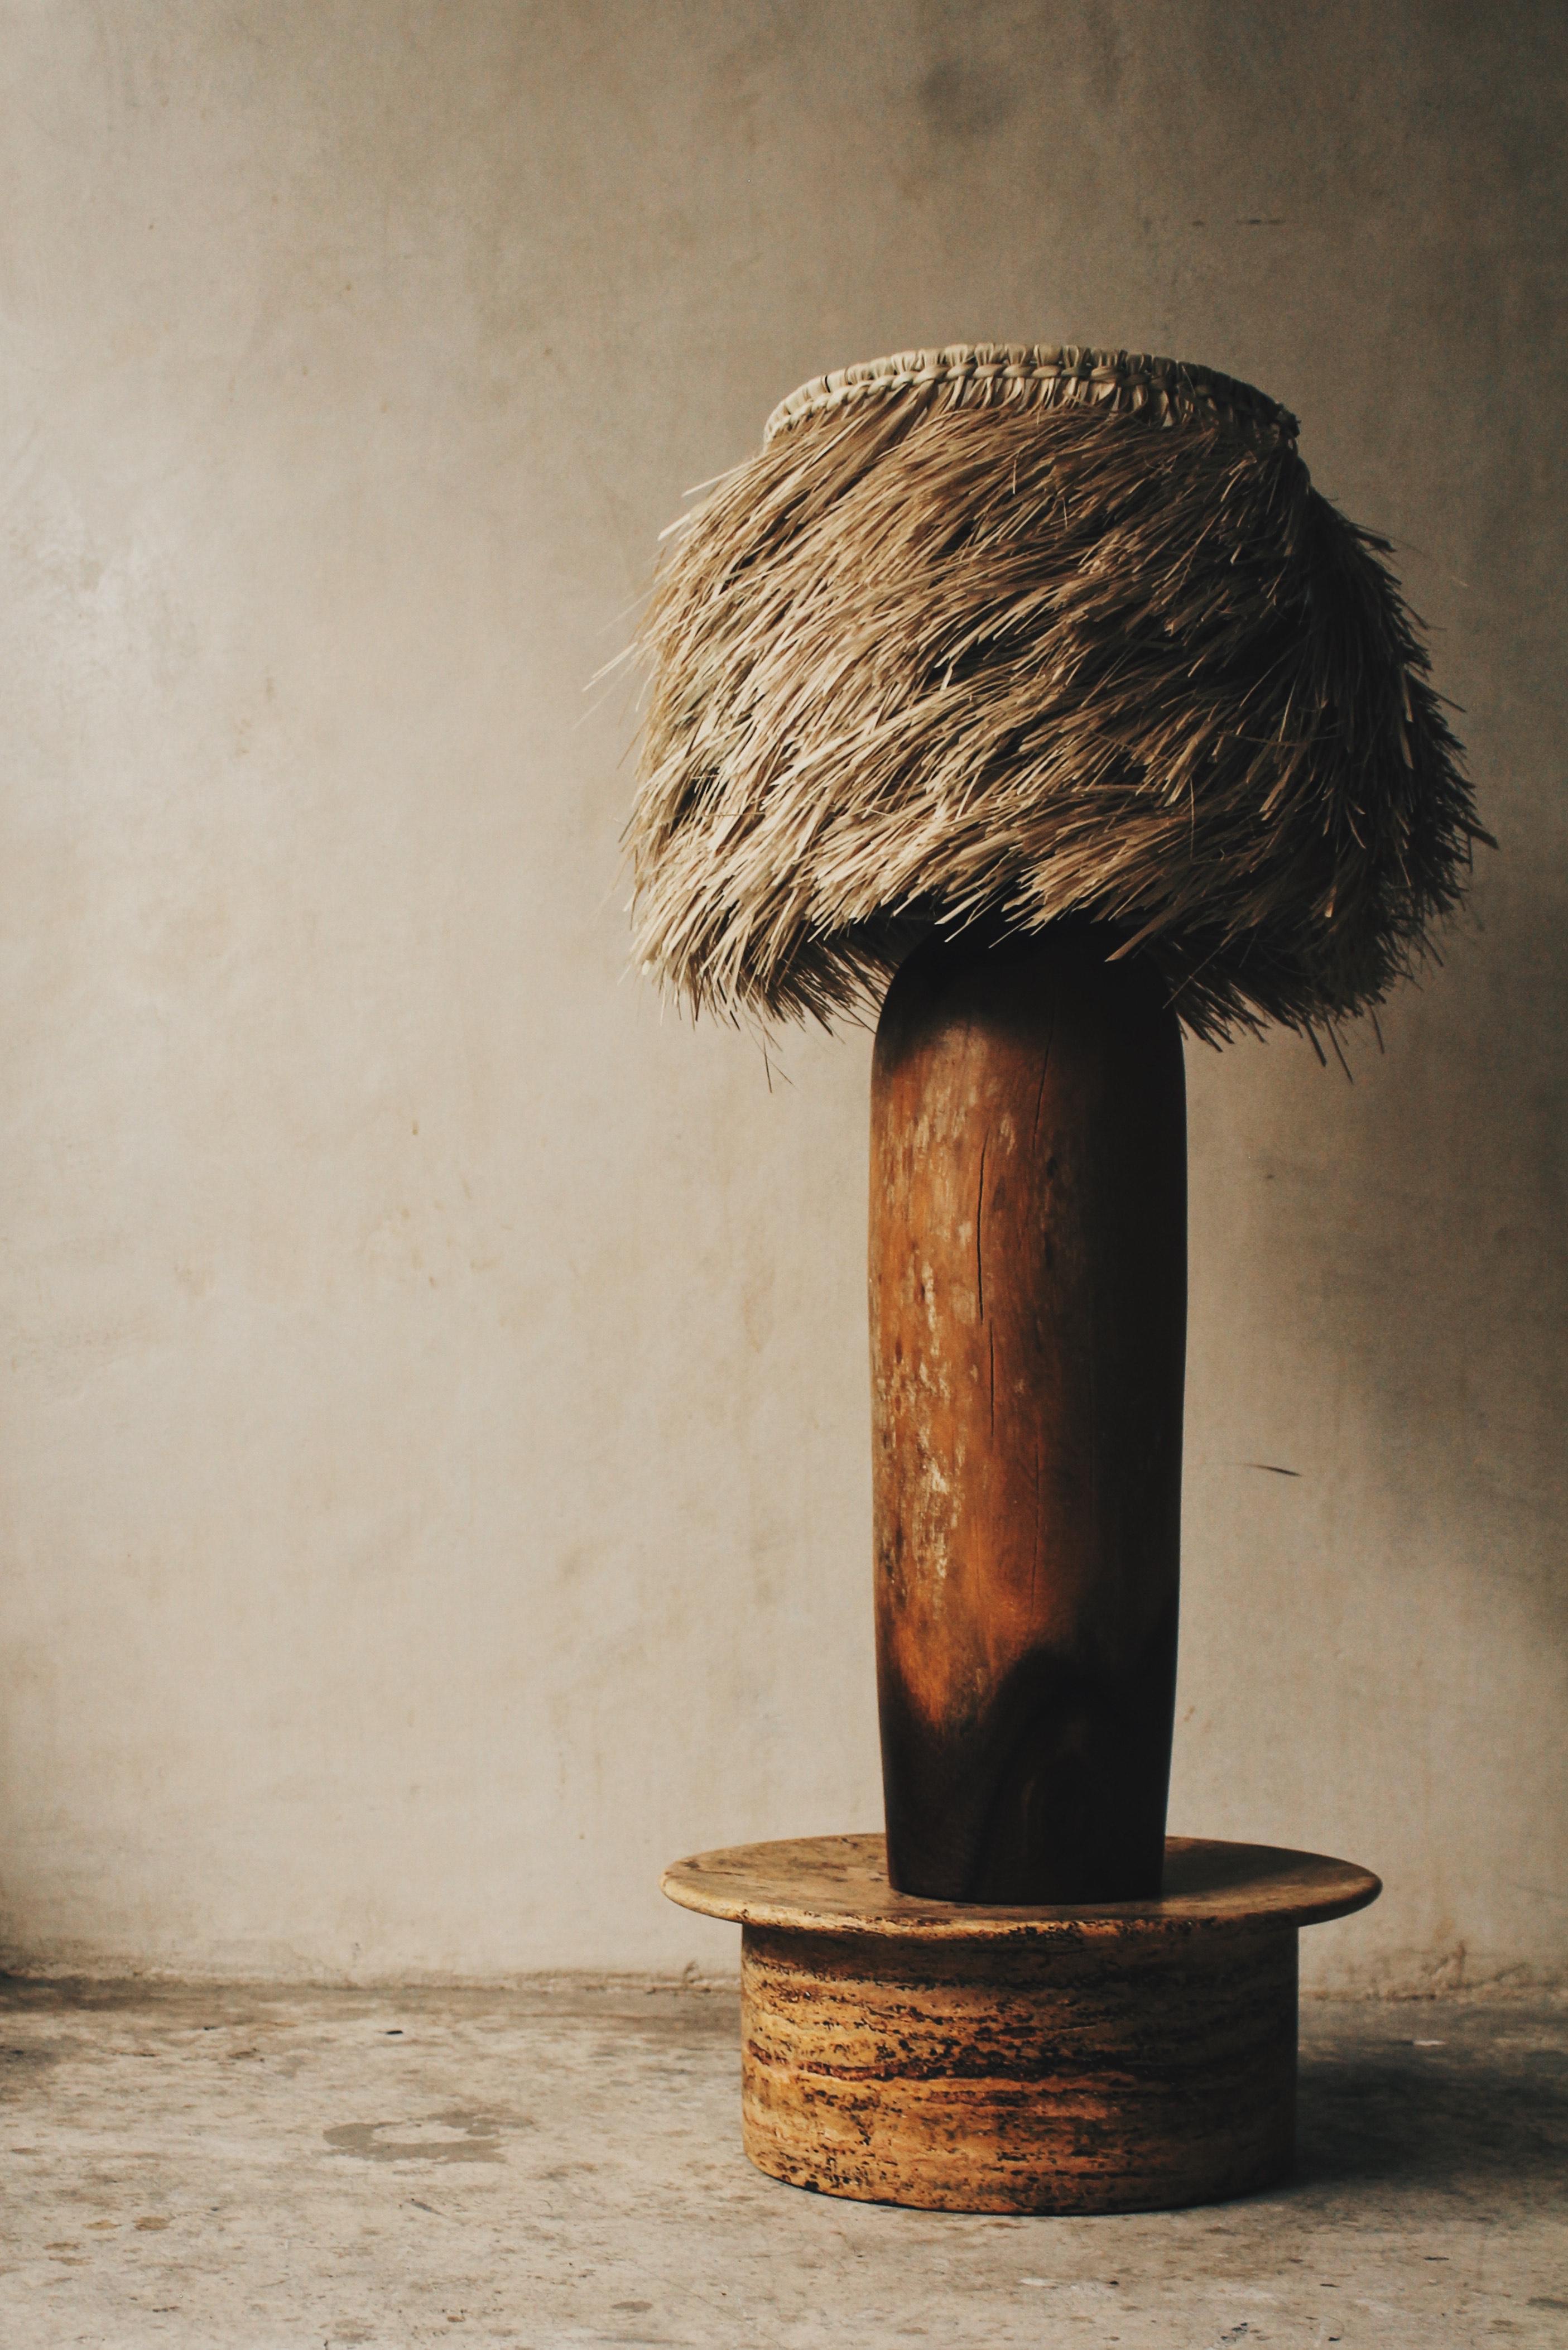 Lampe mit Massivholzsockel aus Jabín und Palmenschirm von Daniel Orozco
Abmessungen: T15 x H70 cm
MATERIALIEN: Holz, Palme

Alle unsere Lampen können je nach Land verkabelt werden. Wenn es in die USA verkauft wird, wird es zum Beispiel für die USA